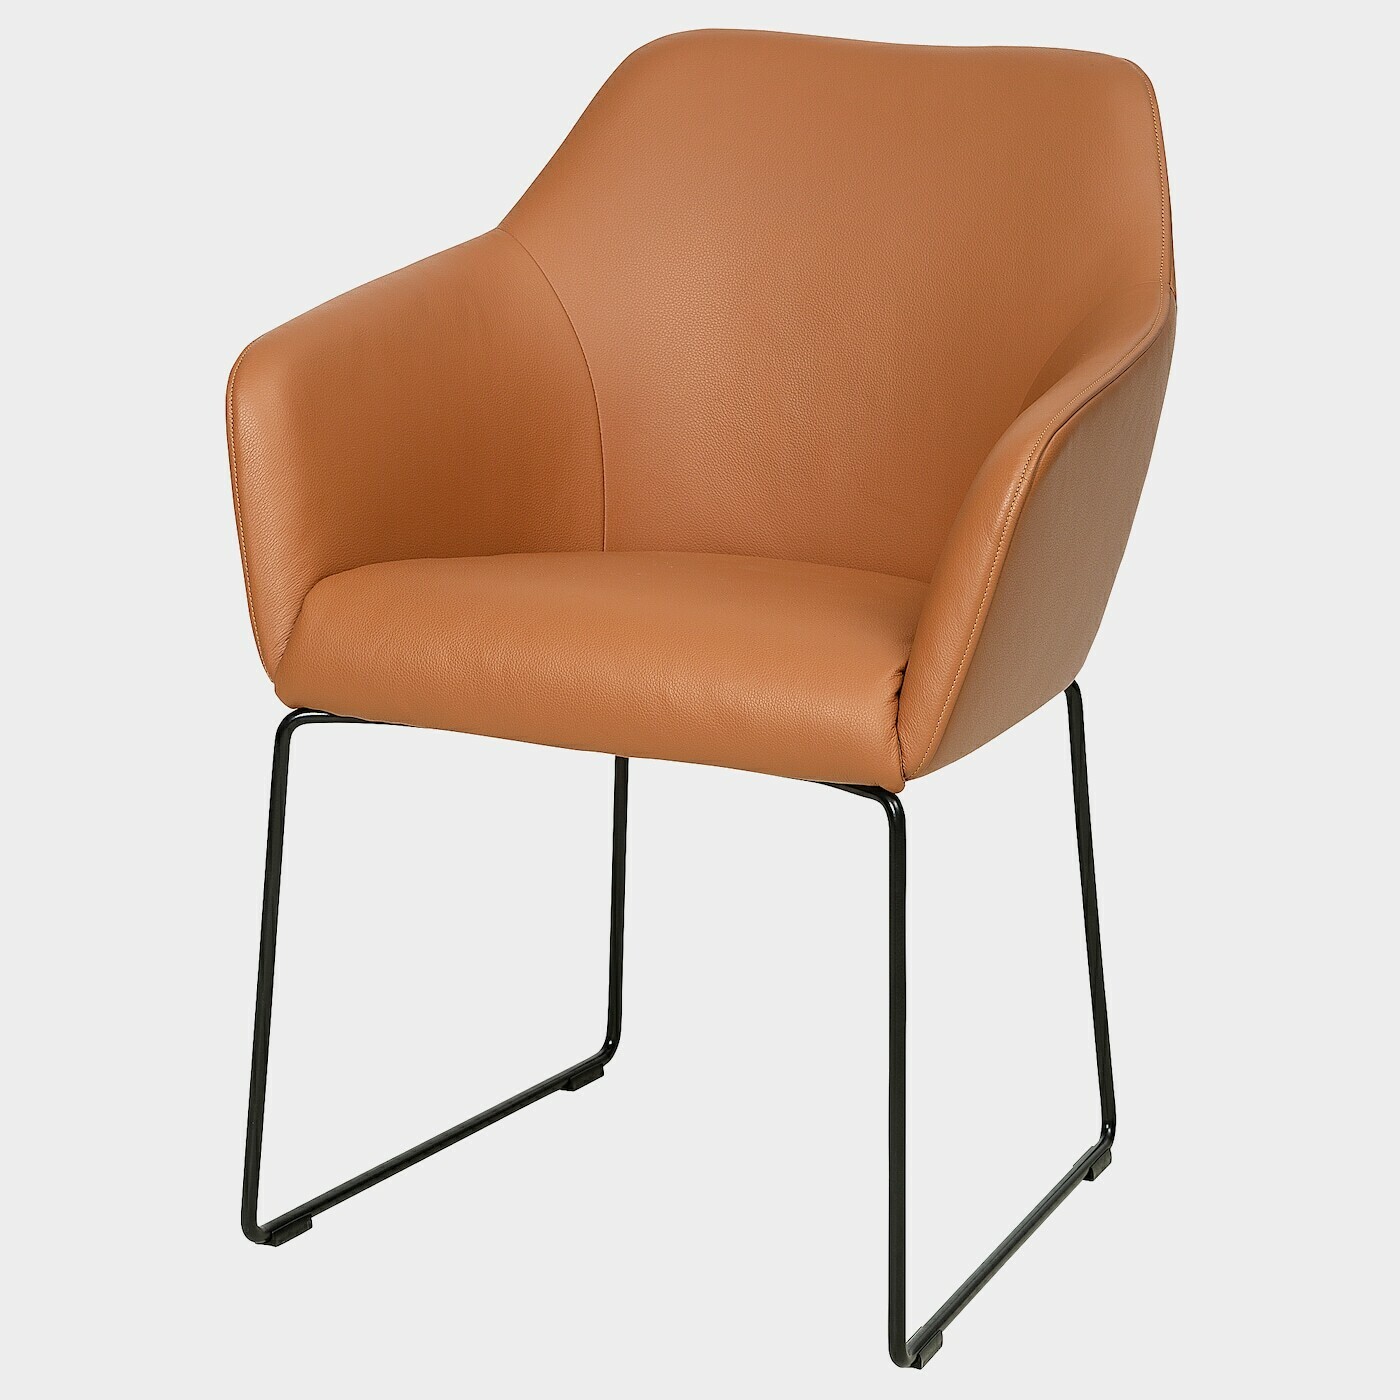 TOSSBERG Stuhl  - Esszimmerstühle - Möbel Ideen für dein Zuhause von Home Trends. Möbel Trends von Social Media Influencer für dein Skandi Zuhause.